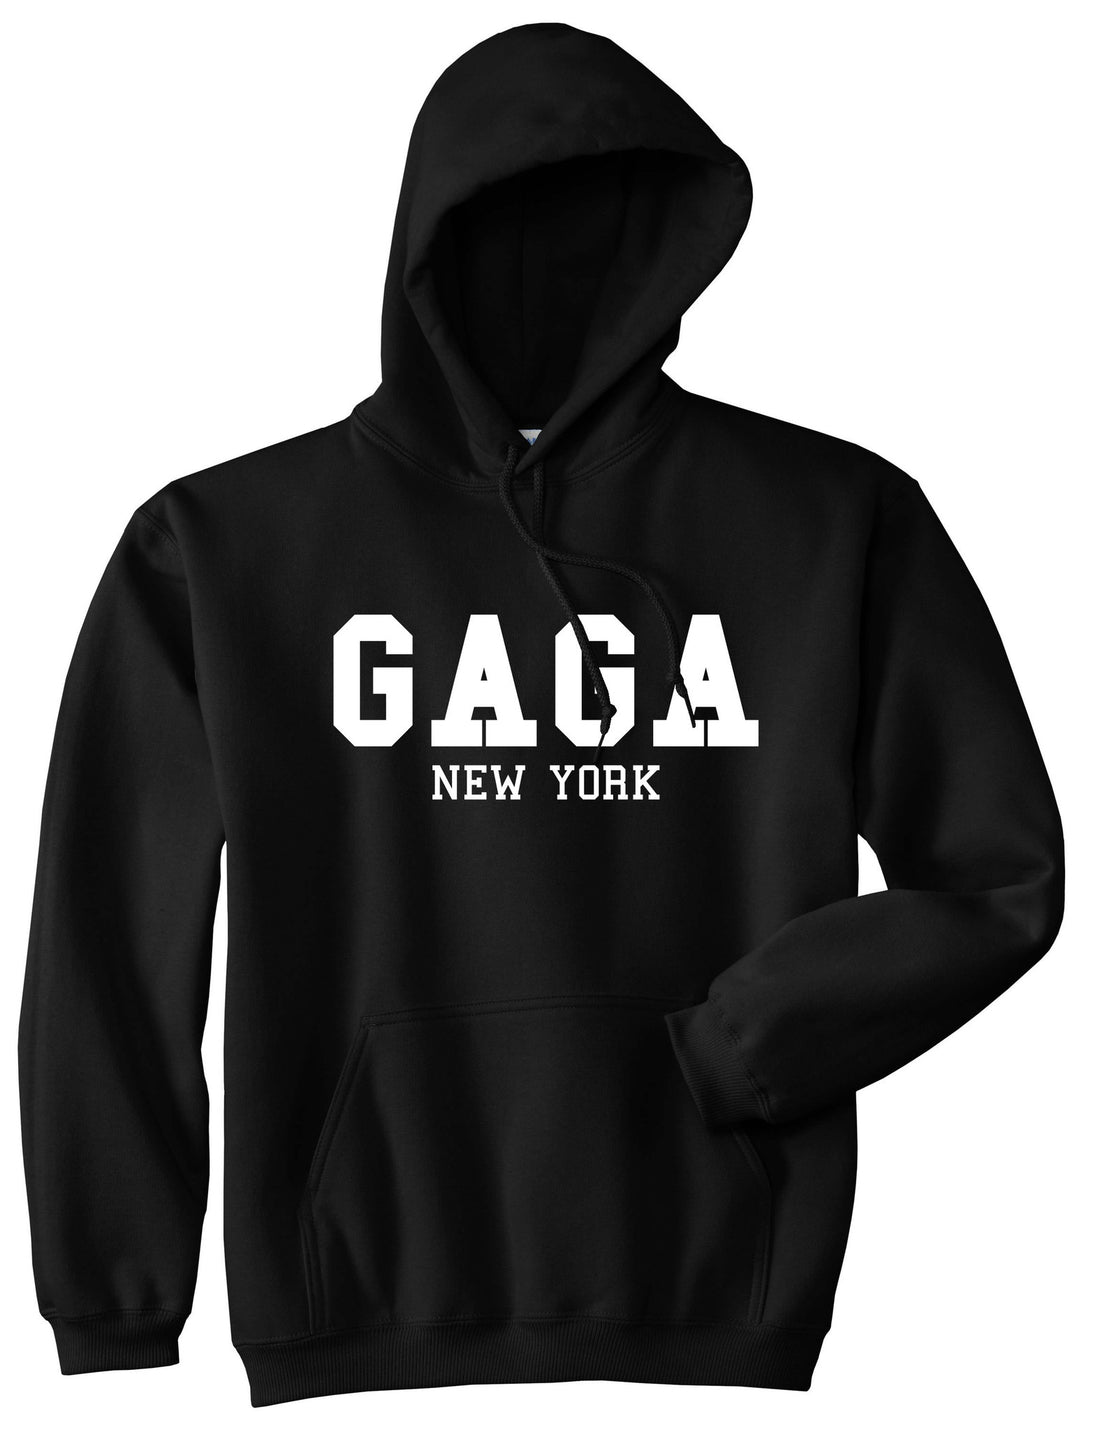 Gaga New York Pullover Hoodie Hoody in Black by Kings Of NY